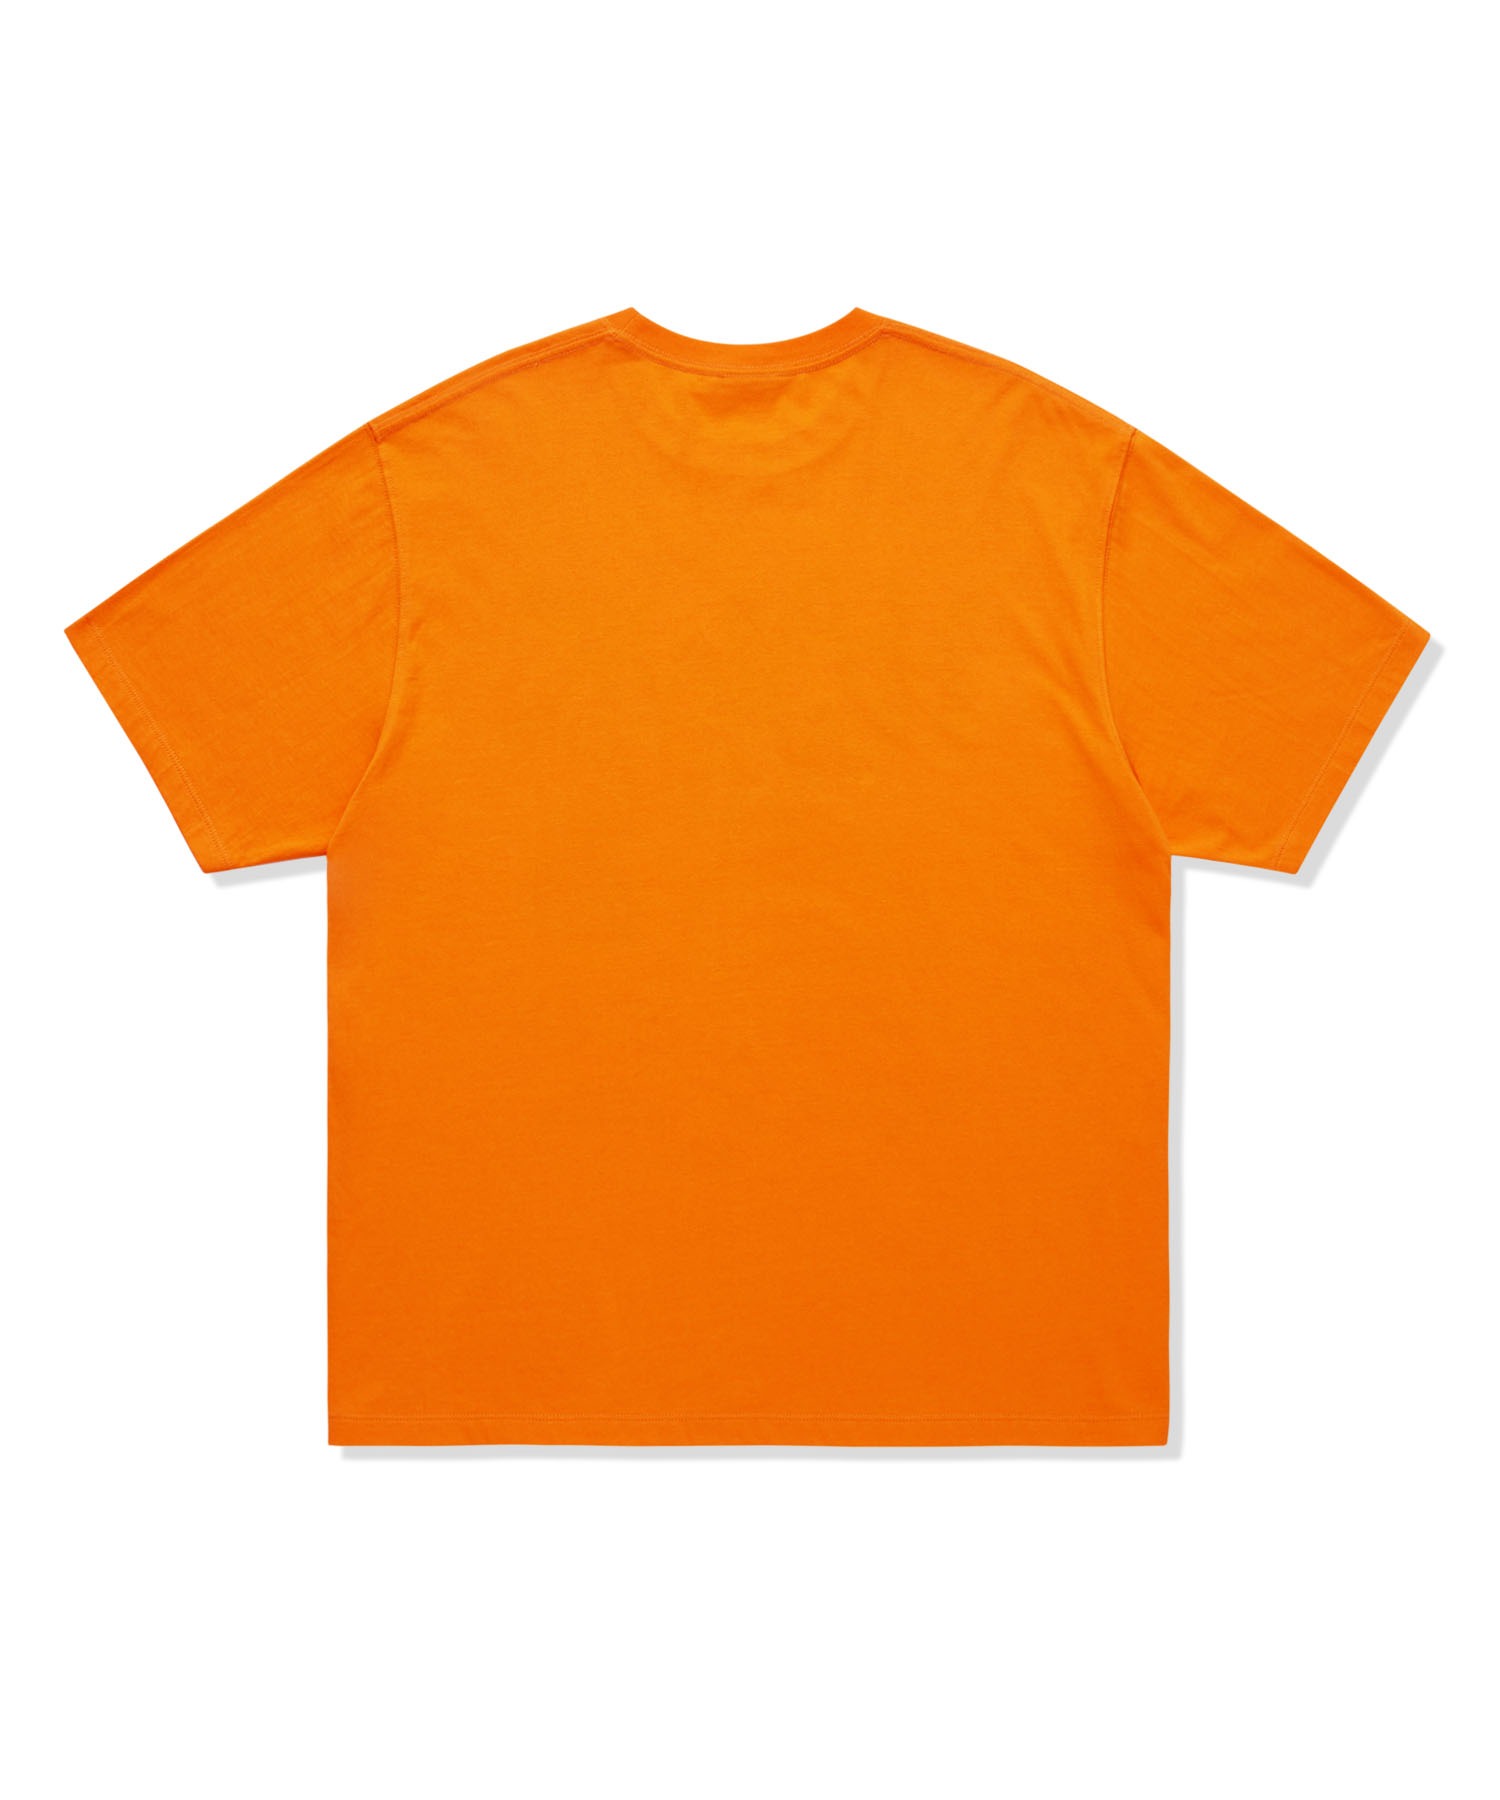 스케이트보이 그래픽 티셔츠 오렌지